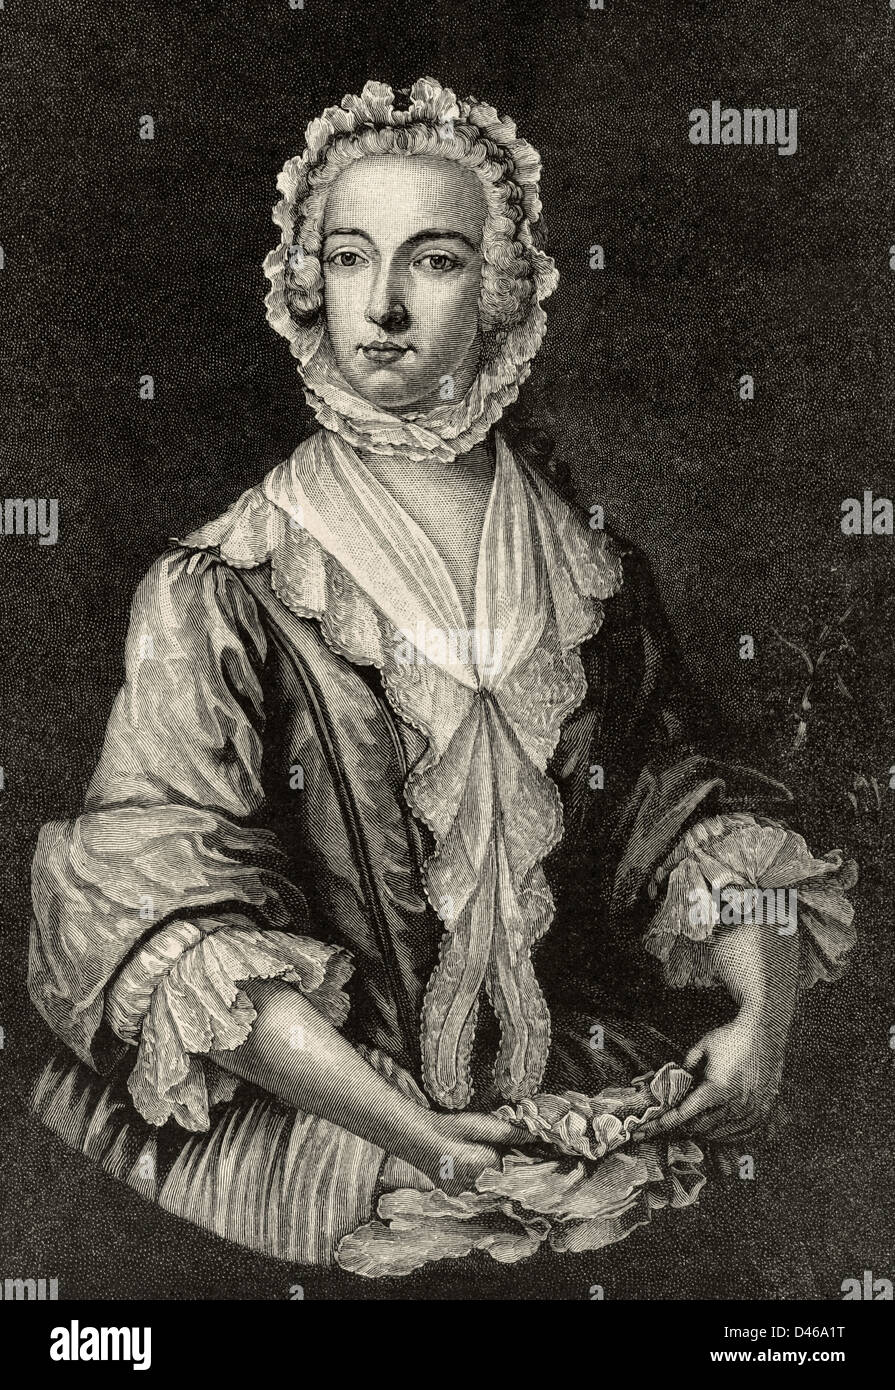 Charles Edward Stuart (1720-1788). Aristócrata escocesa. El príncipe Charles Edward Stuart disfrazados como Betty Burke, 1747. Grabado. Foto de stock